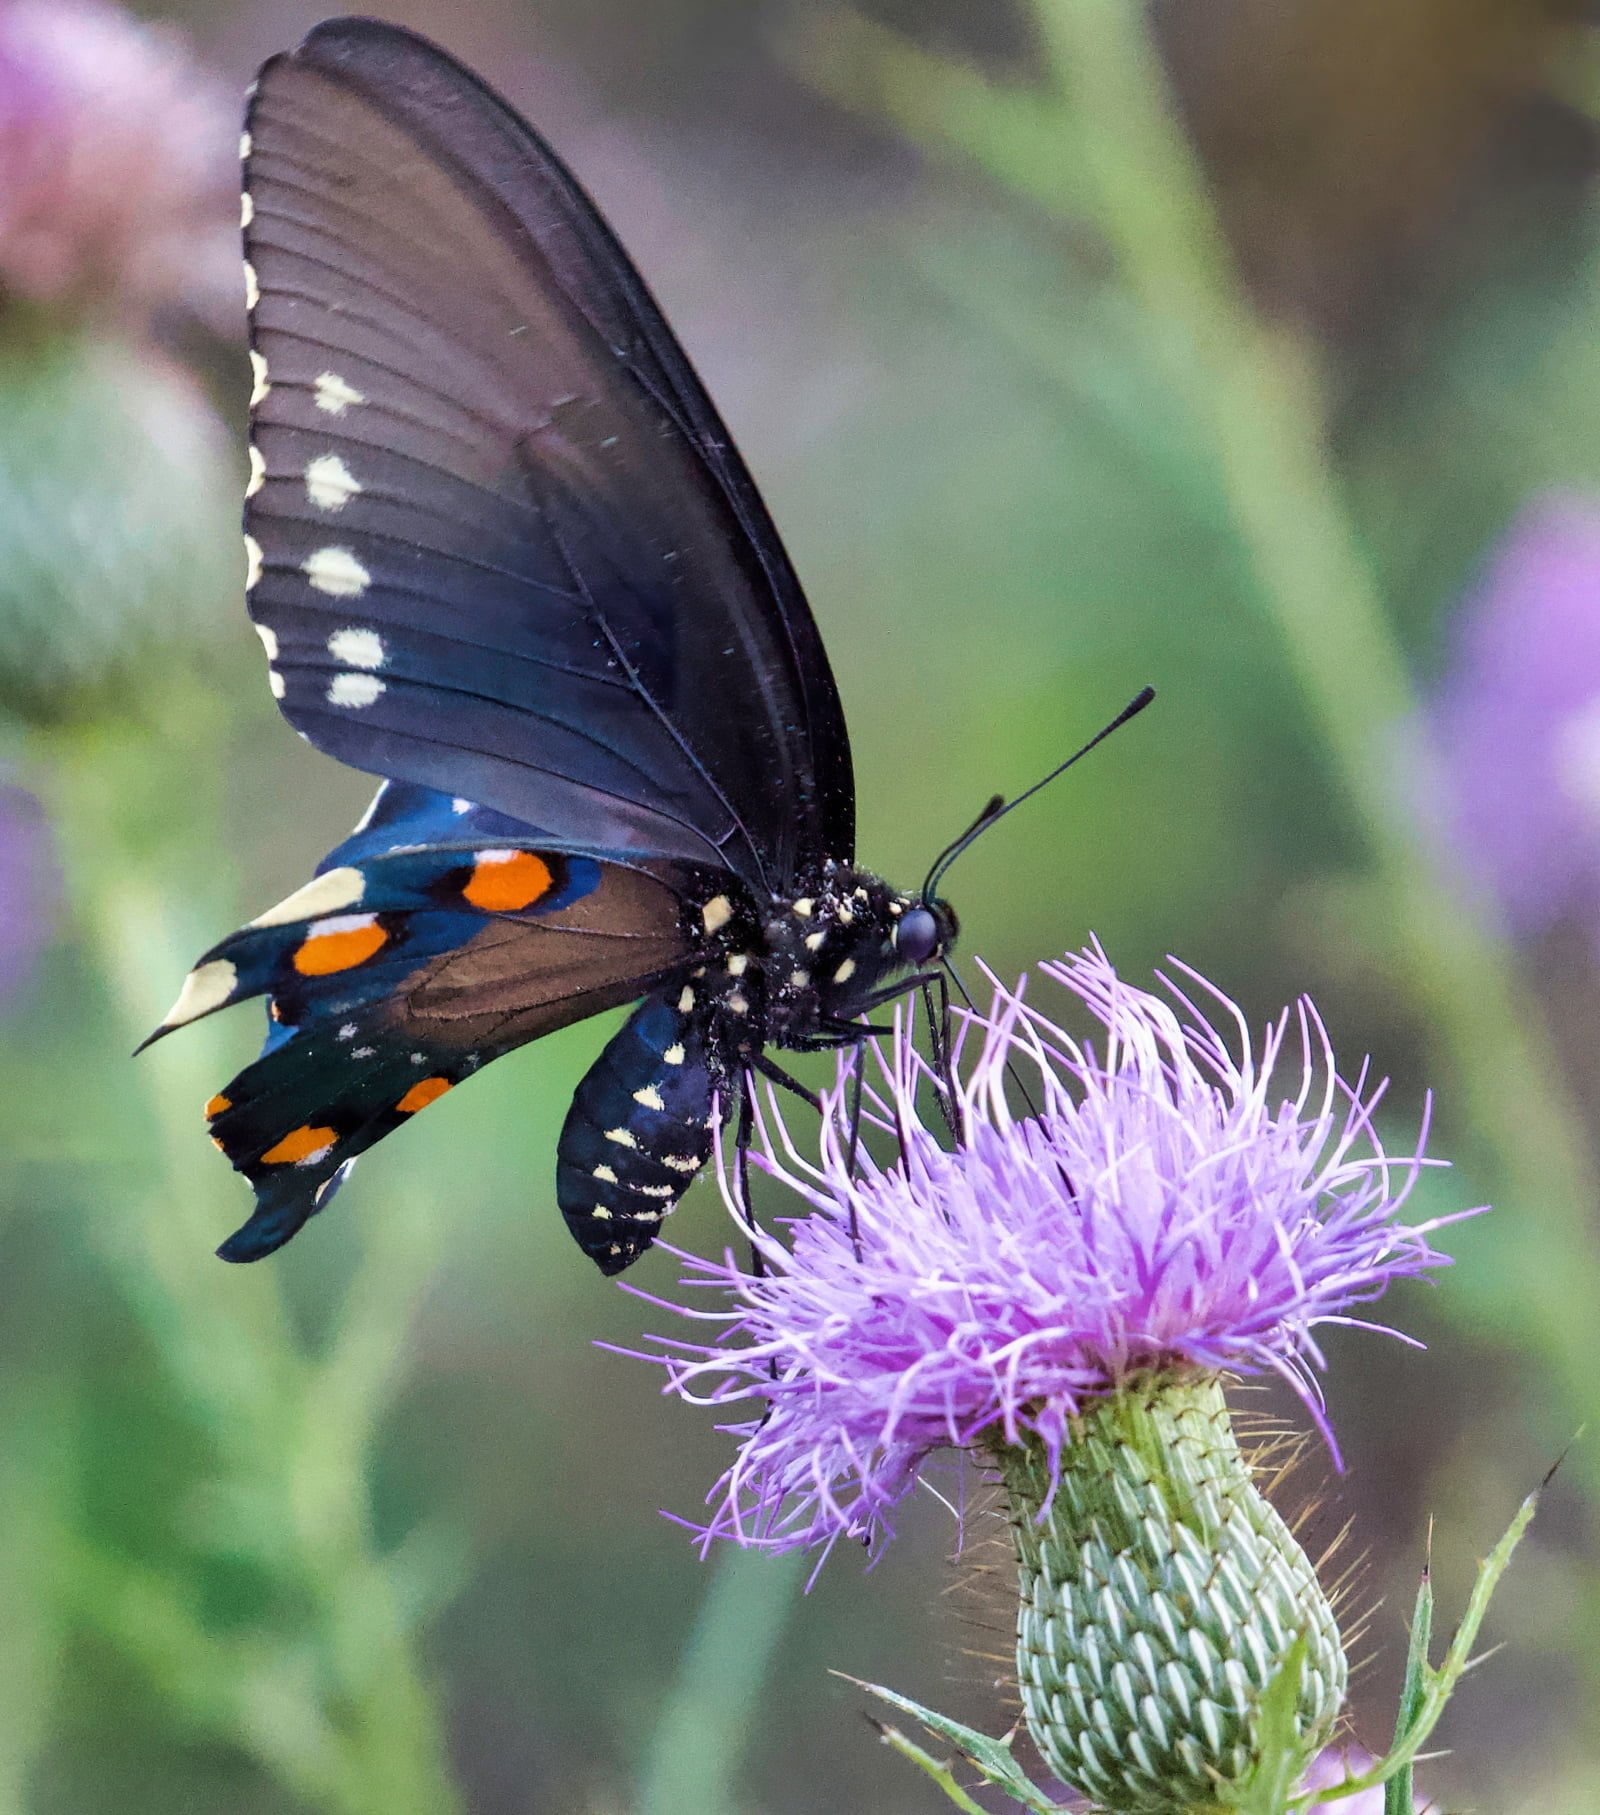 Black Swallowtail on purple coneflower